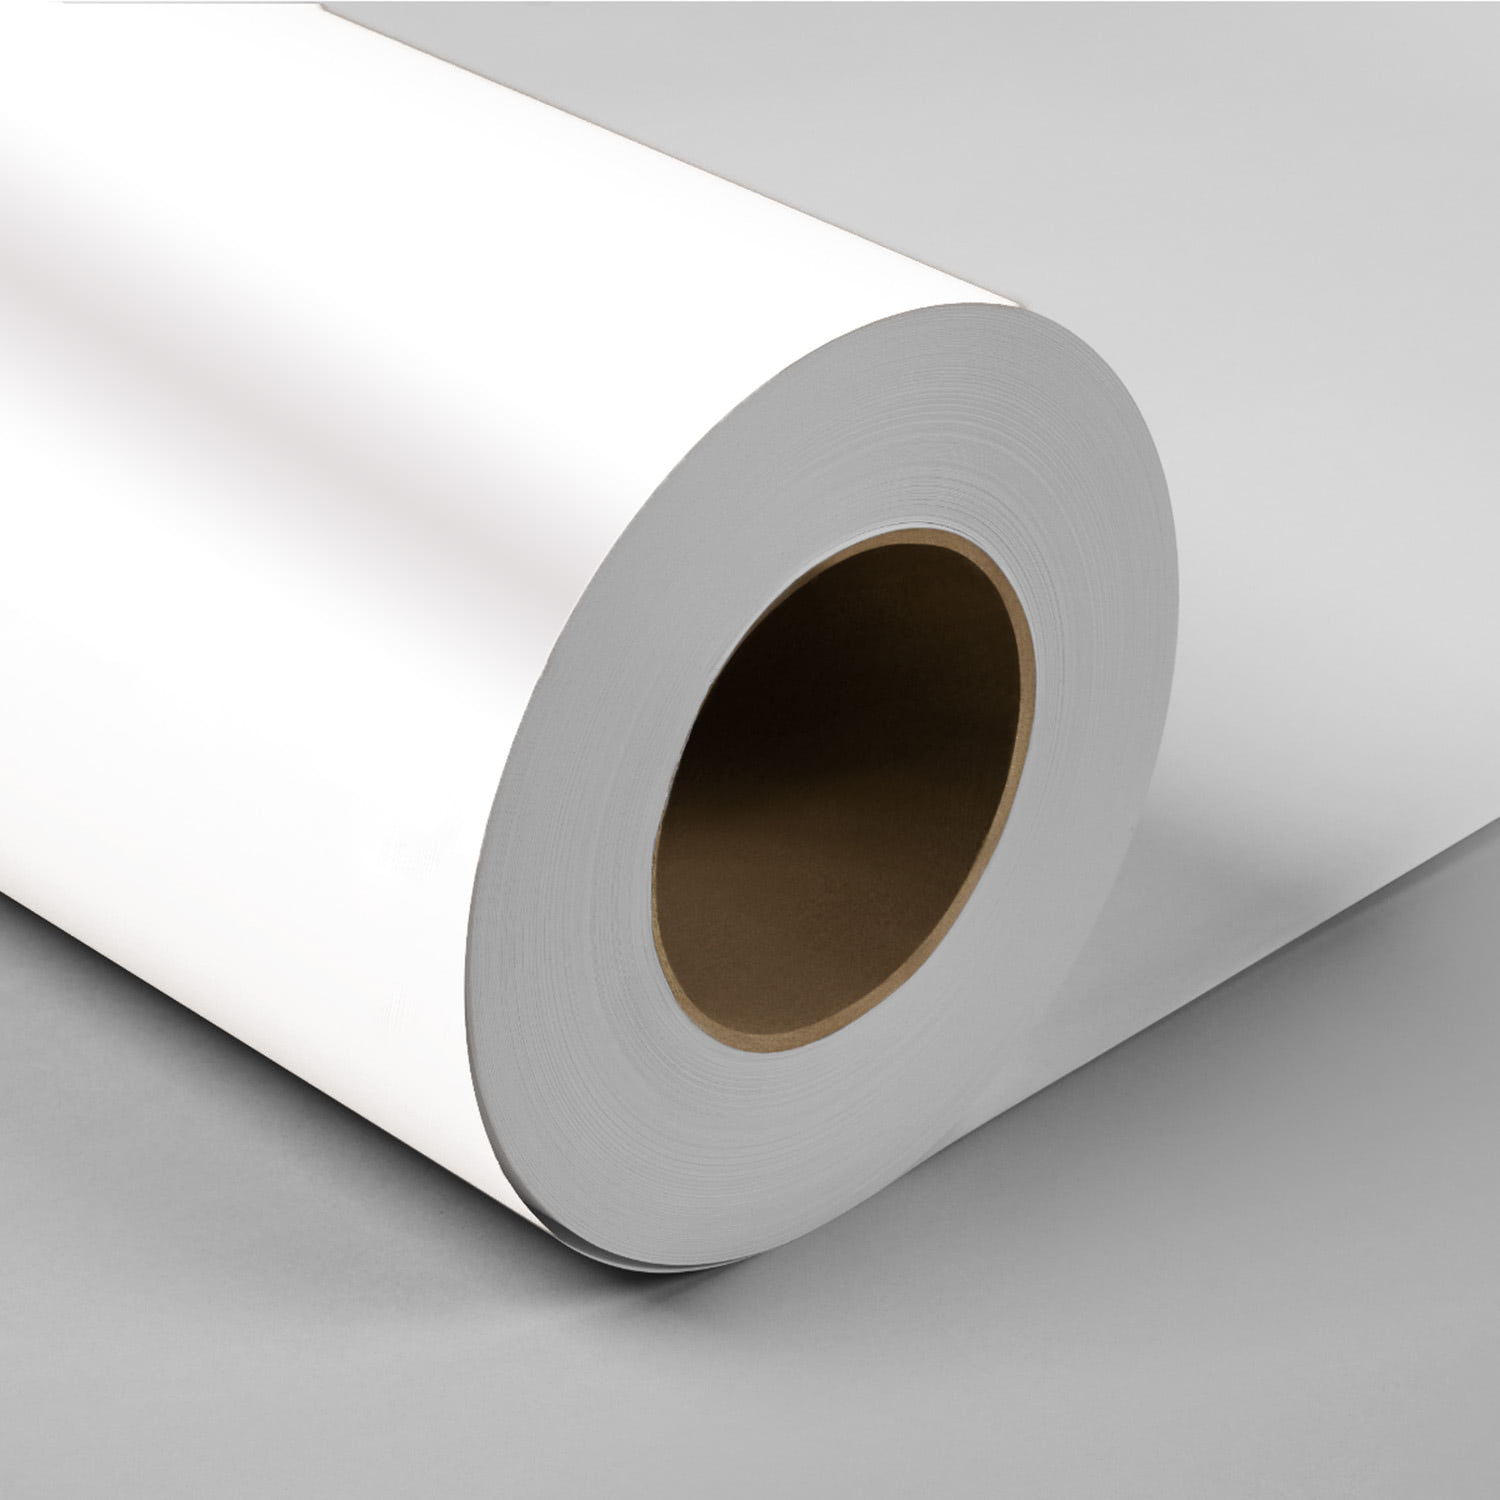 Rouleau de papier adhésif repositionnable blanc - 6 mètres